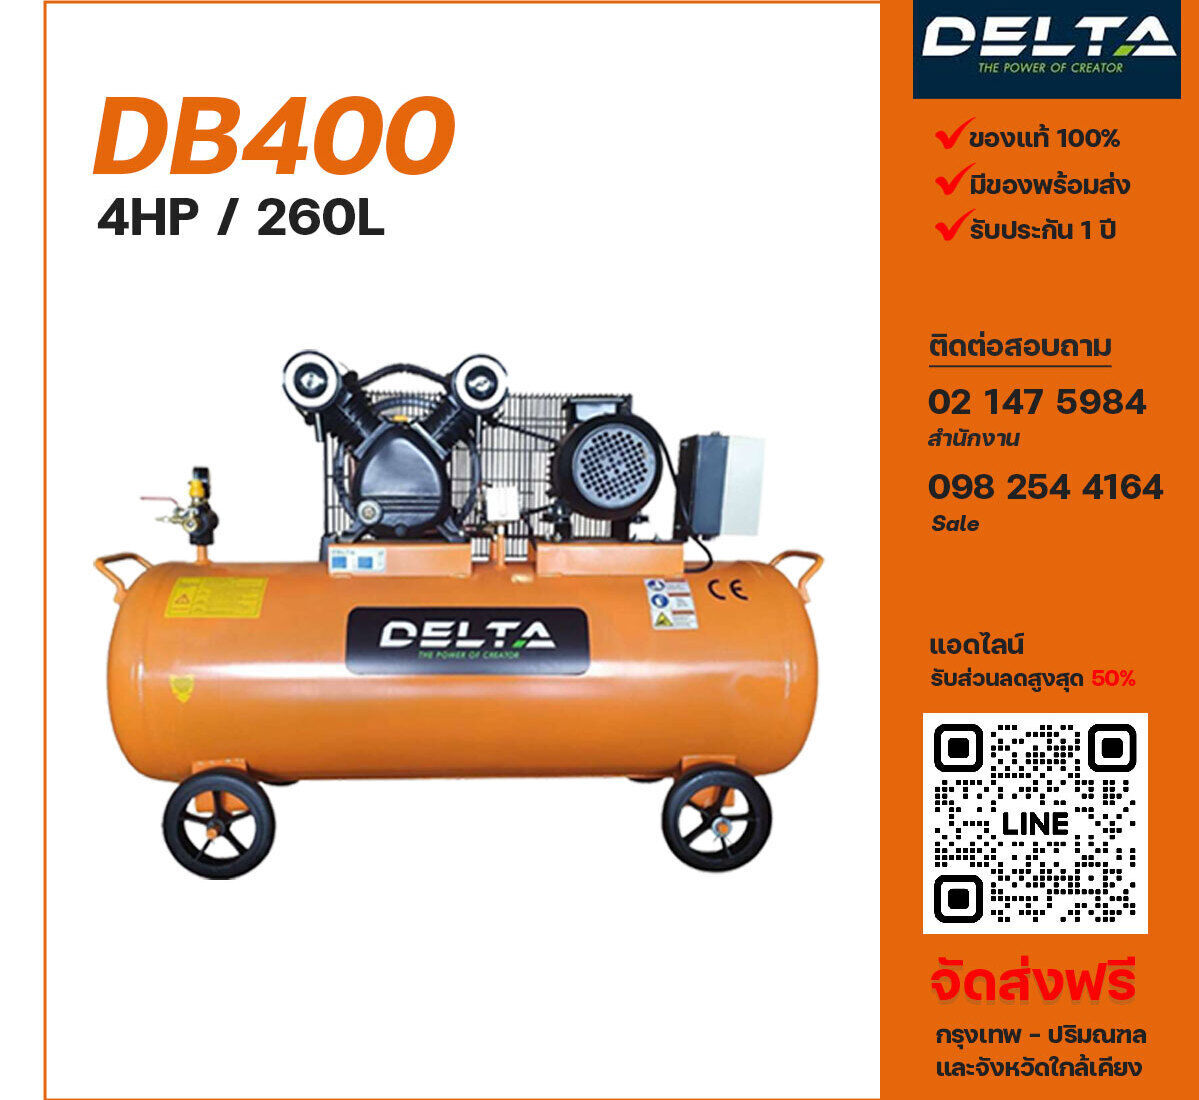 ปั๊มลมเดลต้า DELTA DB400 220V/380V ปั๊มลมลูกสูบ ขนาด 2 สูบ 4 แรงม้า 260 ลิตร DELTA พร้อมมอเตอร์ ไฟ 220V/380V ส่งฟรี กรุงเทพฯ-ปริมณฑล รับประกัน 1 ปี